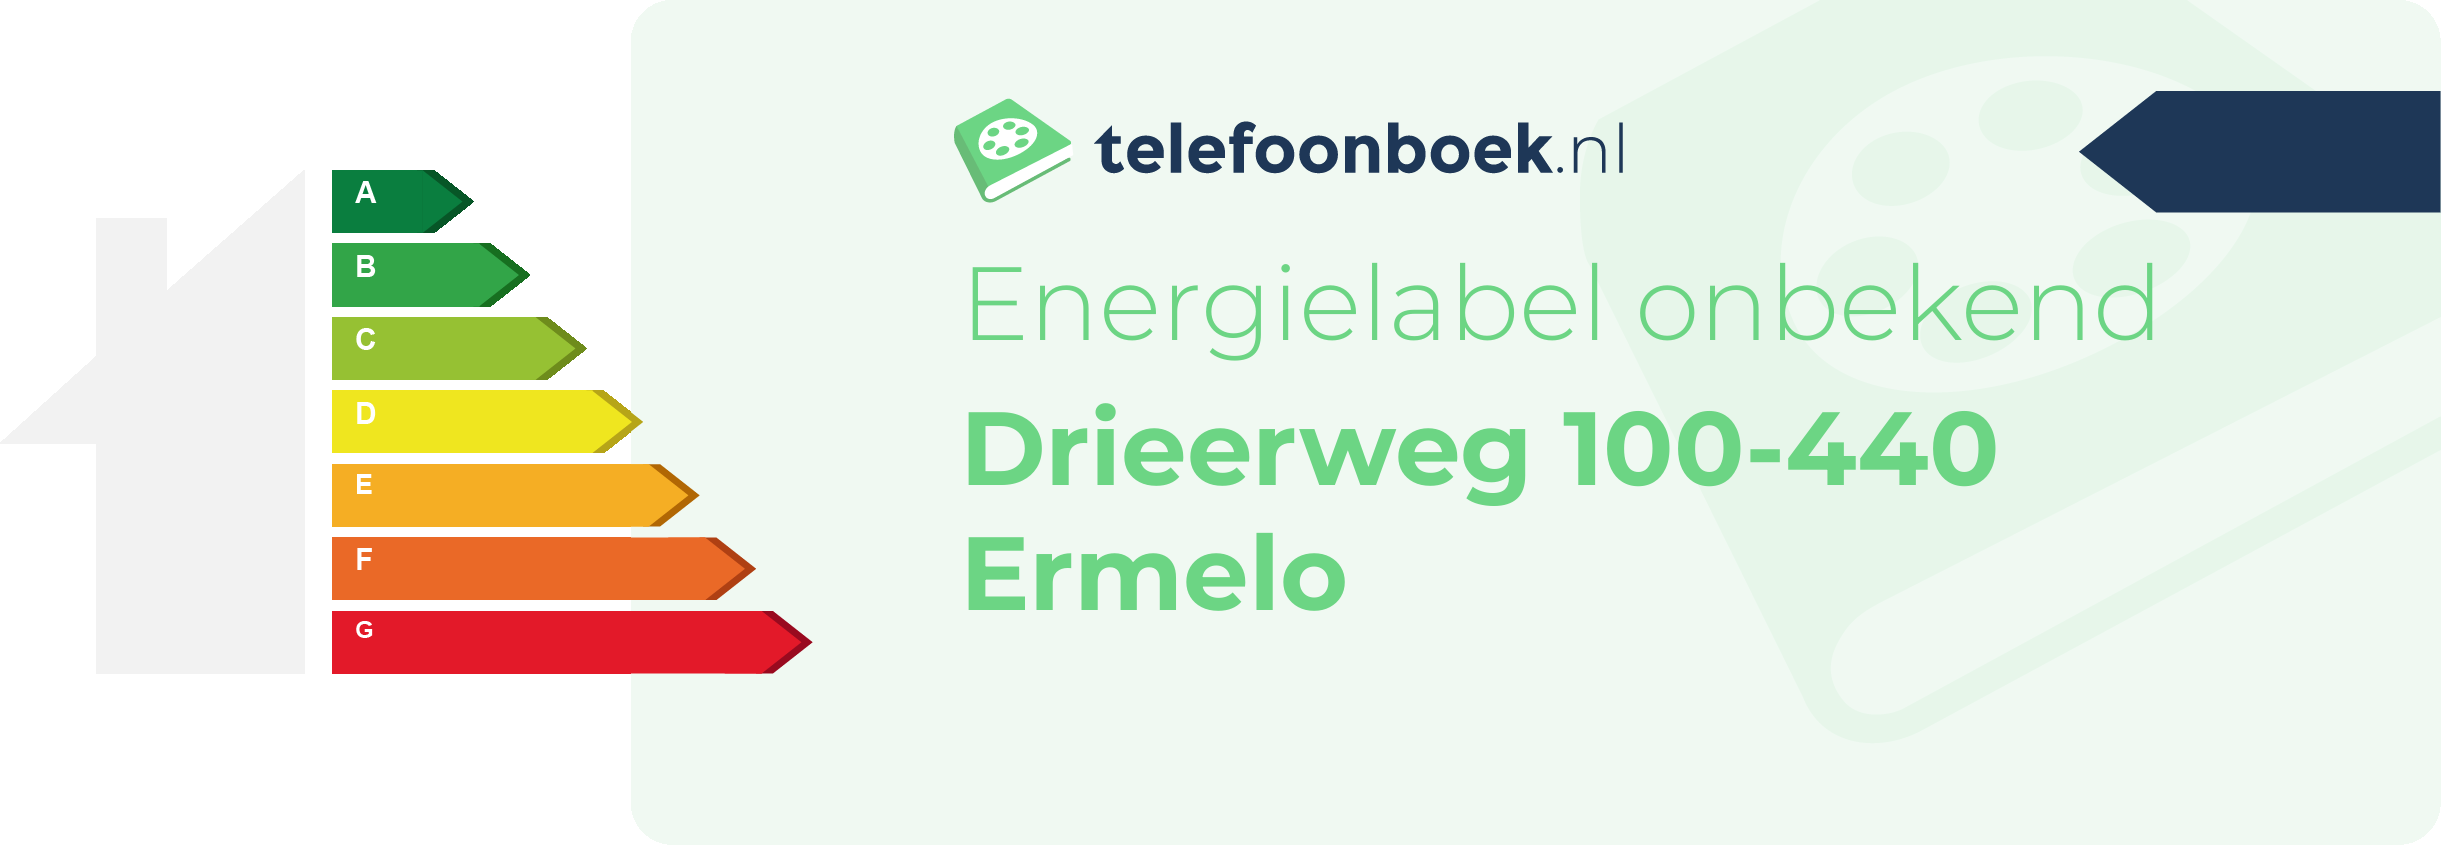 Energielabel Drieerweg 100-440 Ermelo